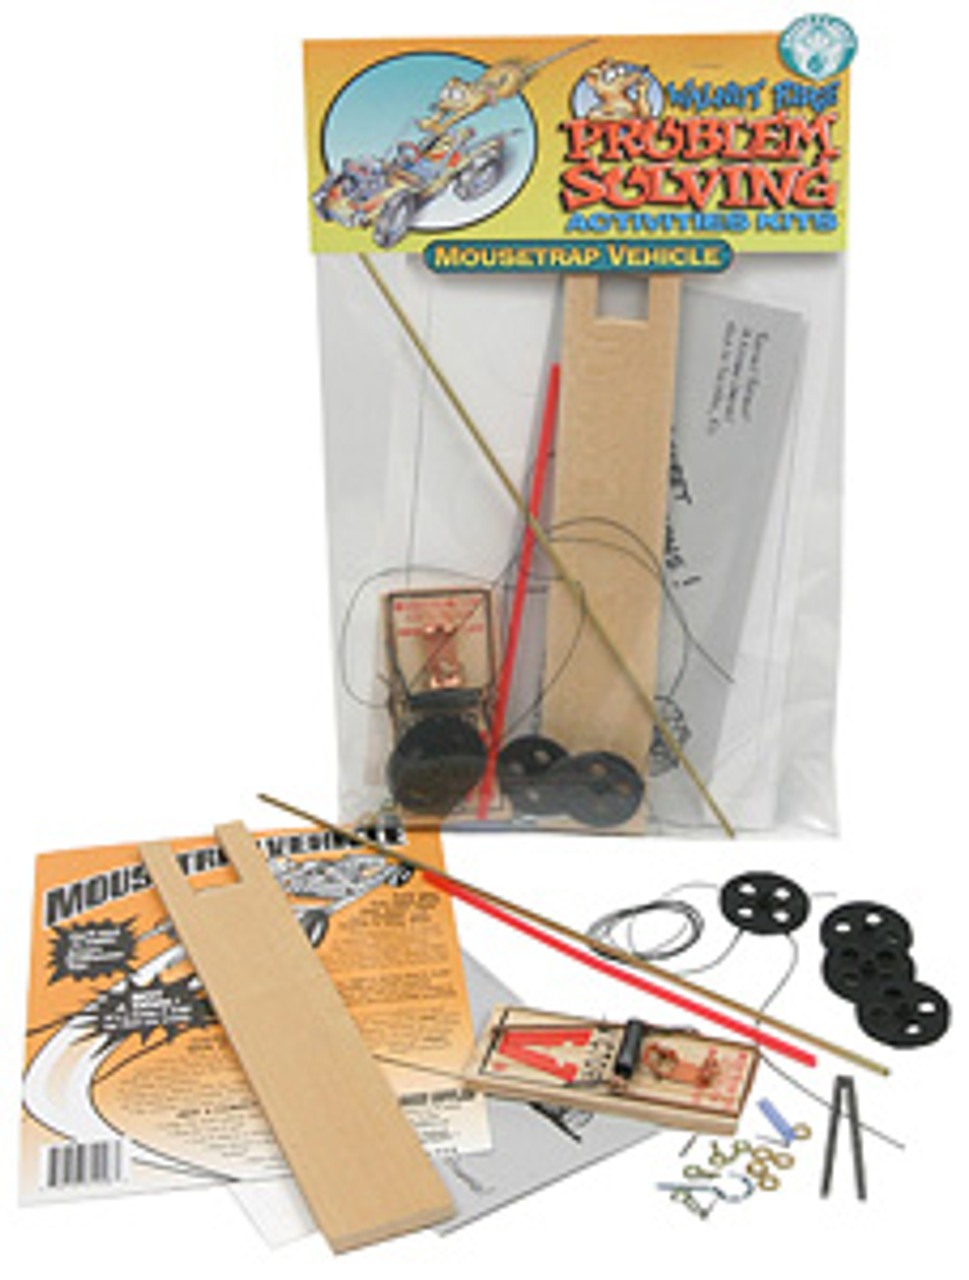 Mousetrap Vehicle Kit